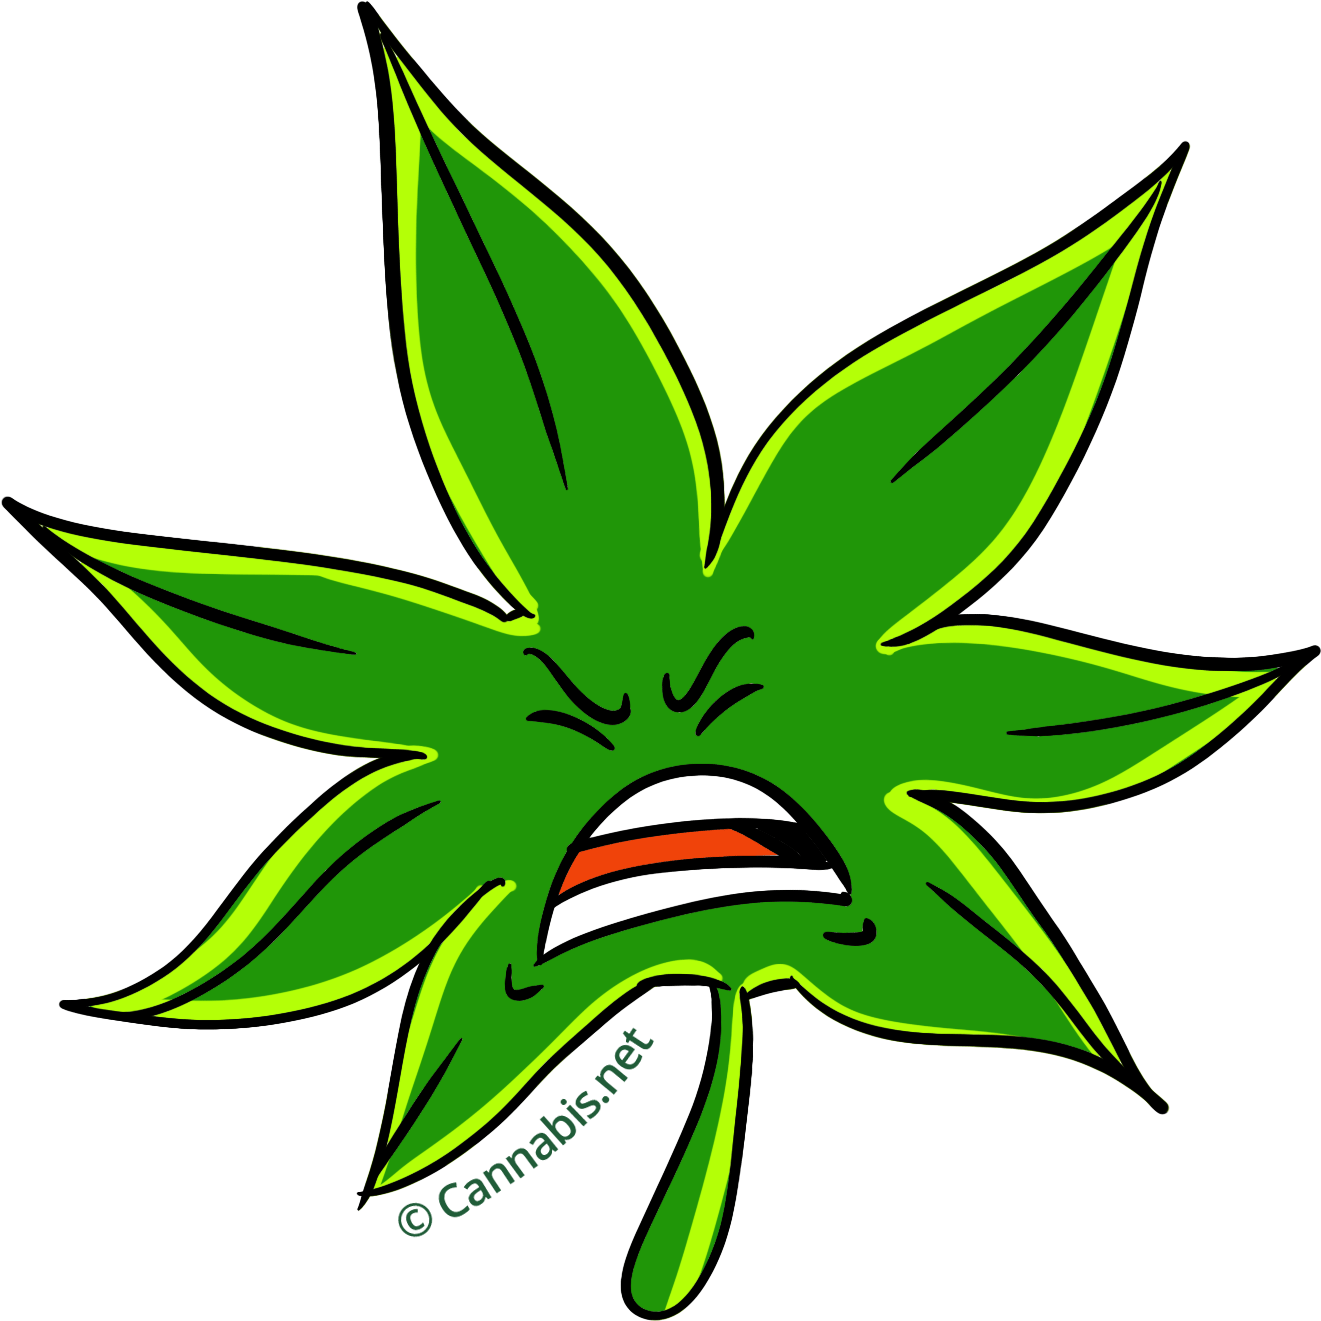 PURPLE KUSH Premium INDICA Hybrid Cannabis Strain